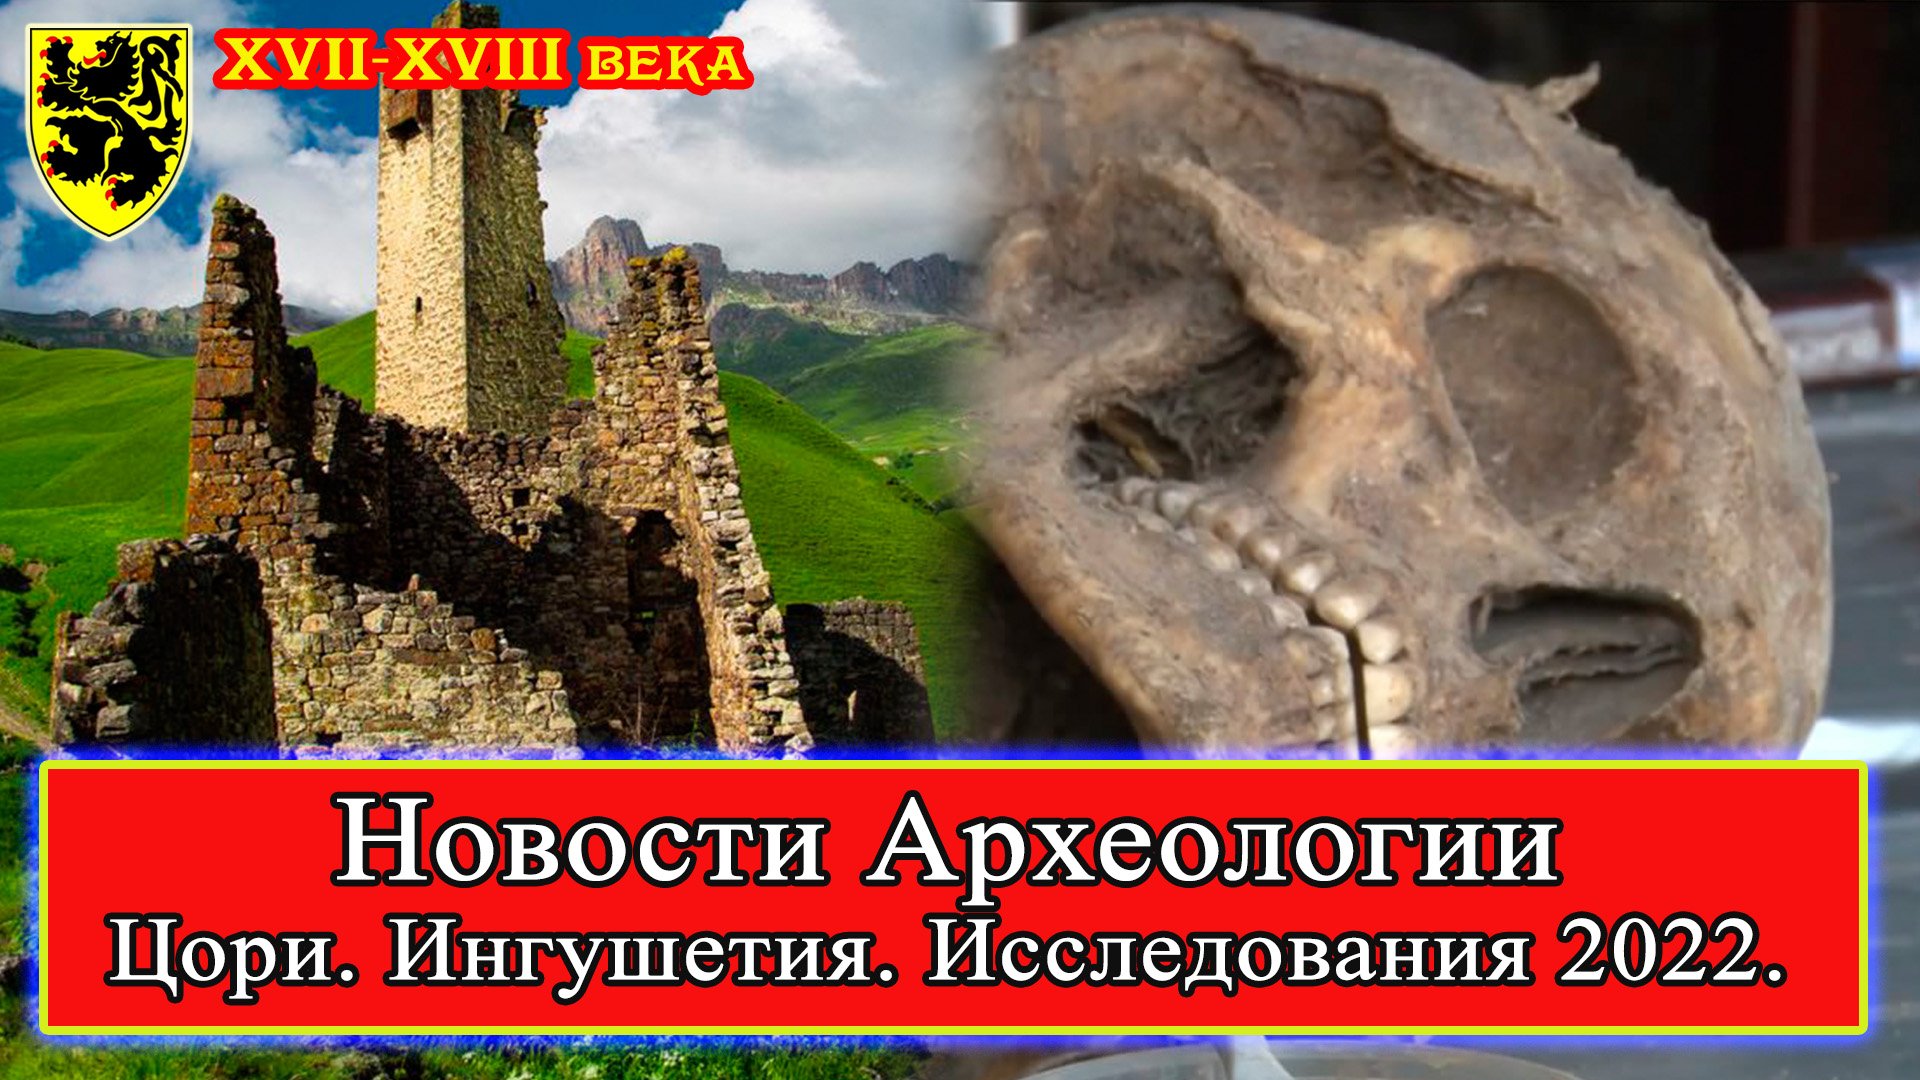 #НовостиАрхеологии ИССЛЕДОВАНИЕ находок Башенного комплекса Цори! #Ингушетия, август-октябрь 2022